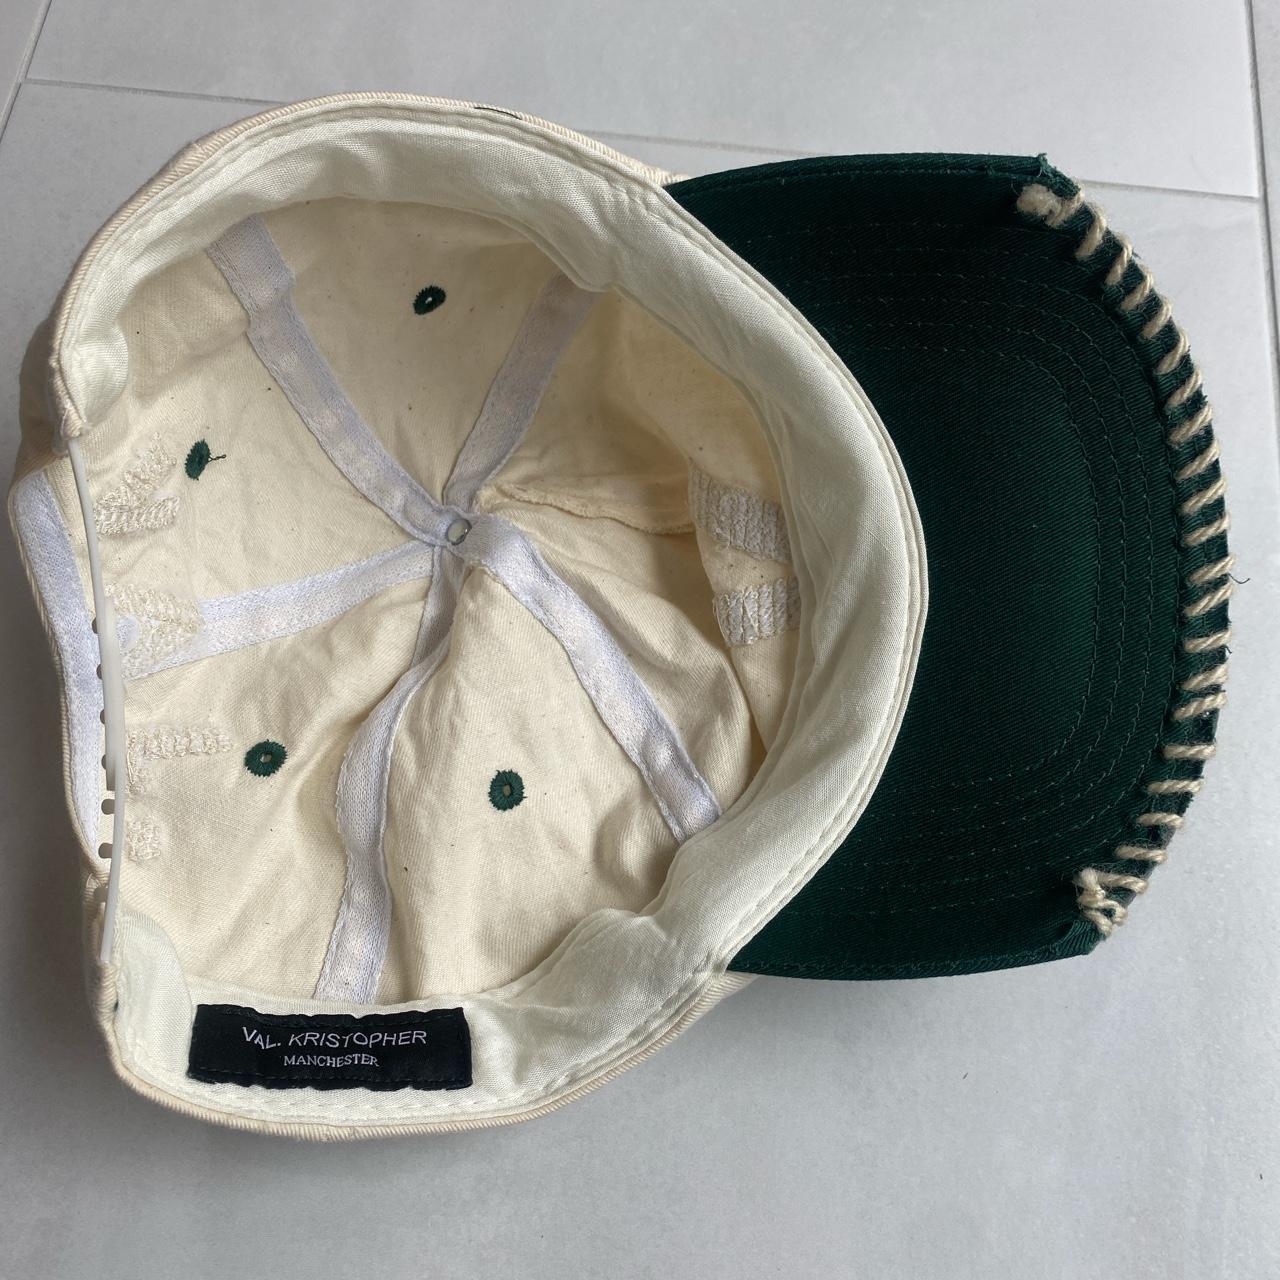 Men's Cream and Green Hat | Depop